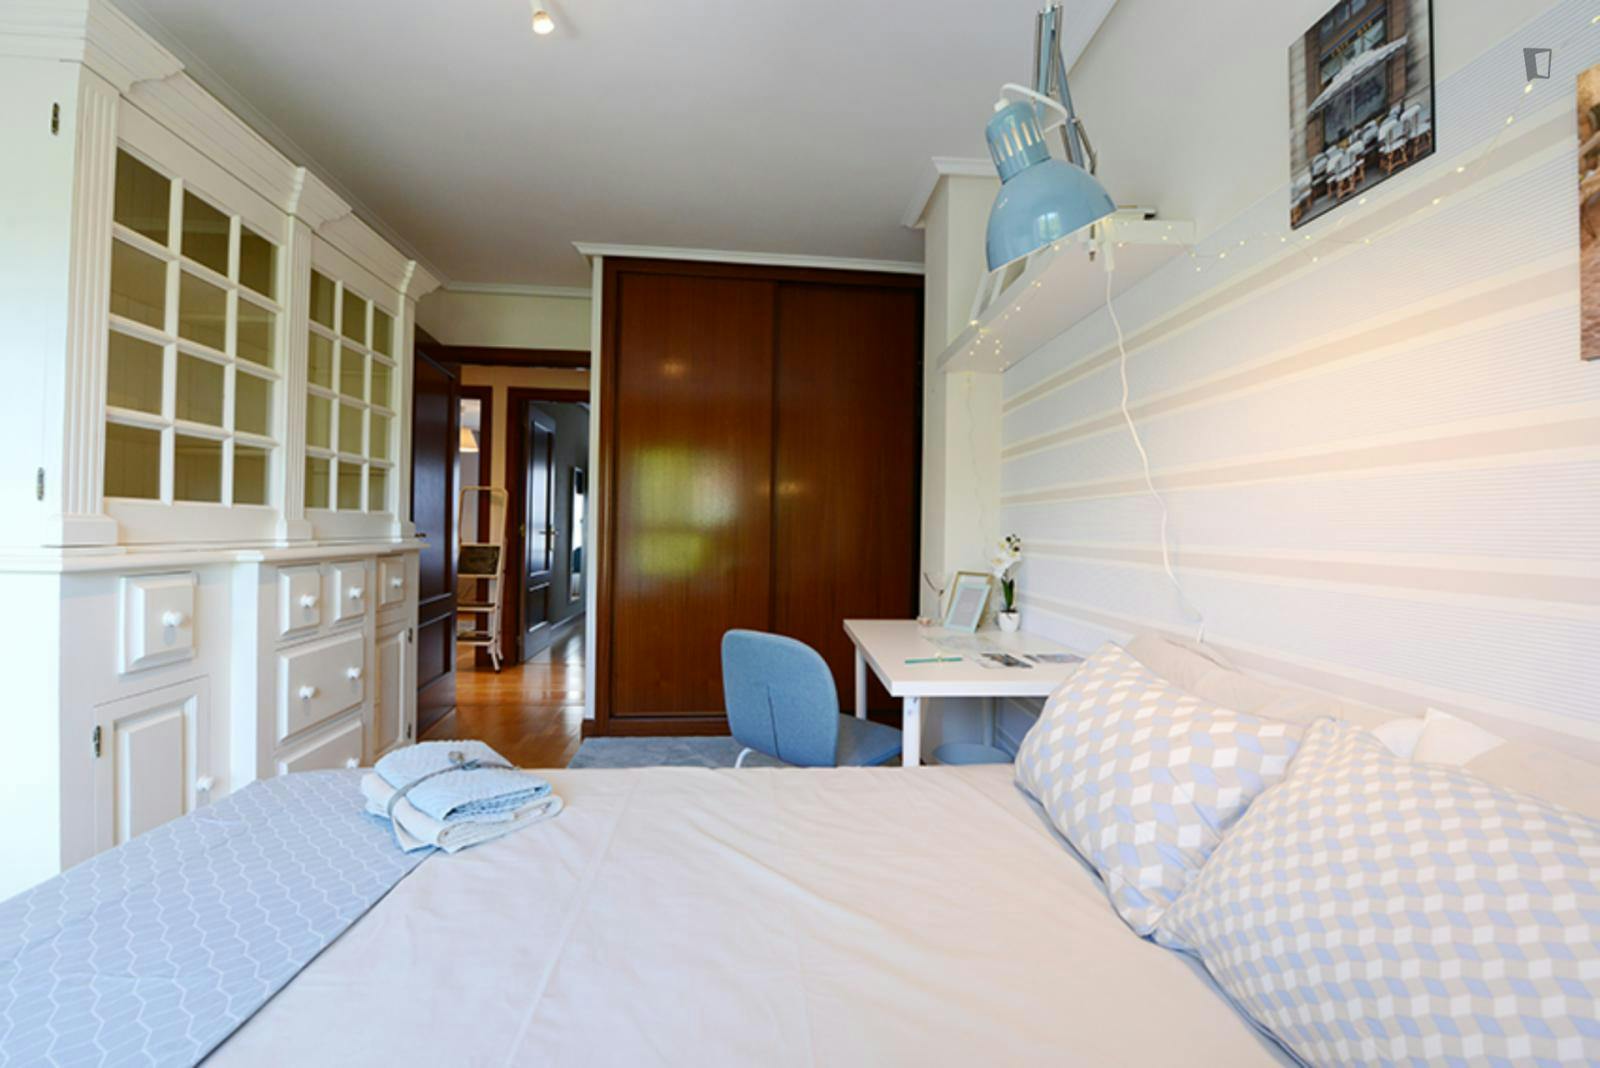 Appealing double bedroom in Mendible